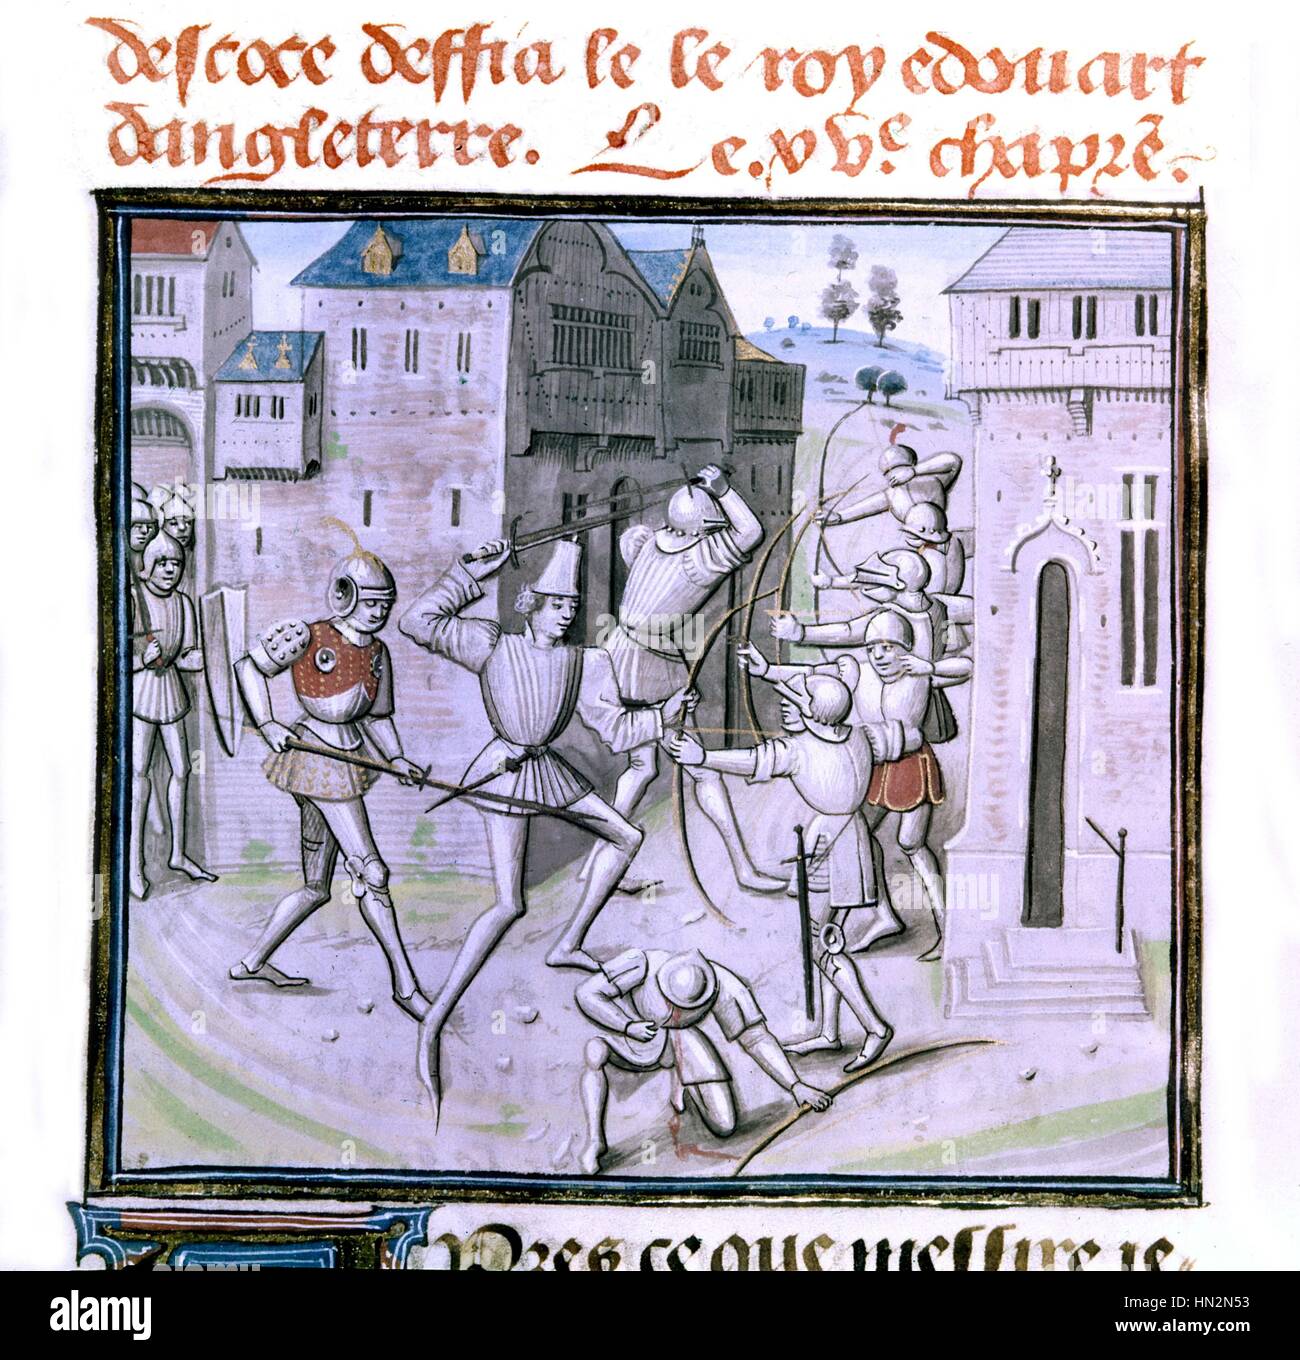 Cronache di Froissart re di Scozia sfidando il re Edoardo d'Inghilterra del XV secolo in Francia Parigi. Bibliotheque de l'ARSENAL Foto Stock